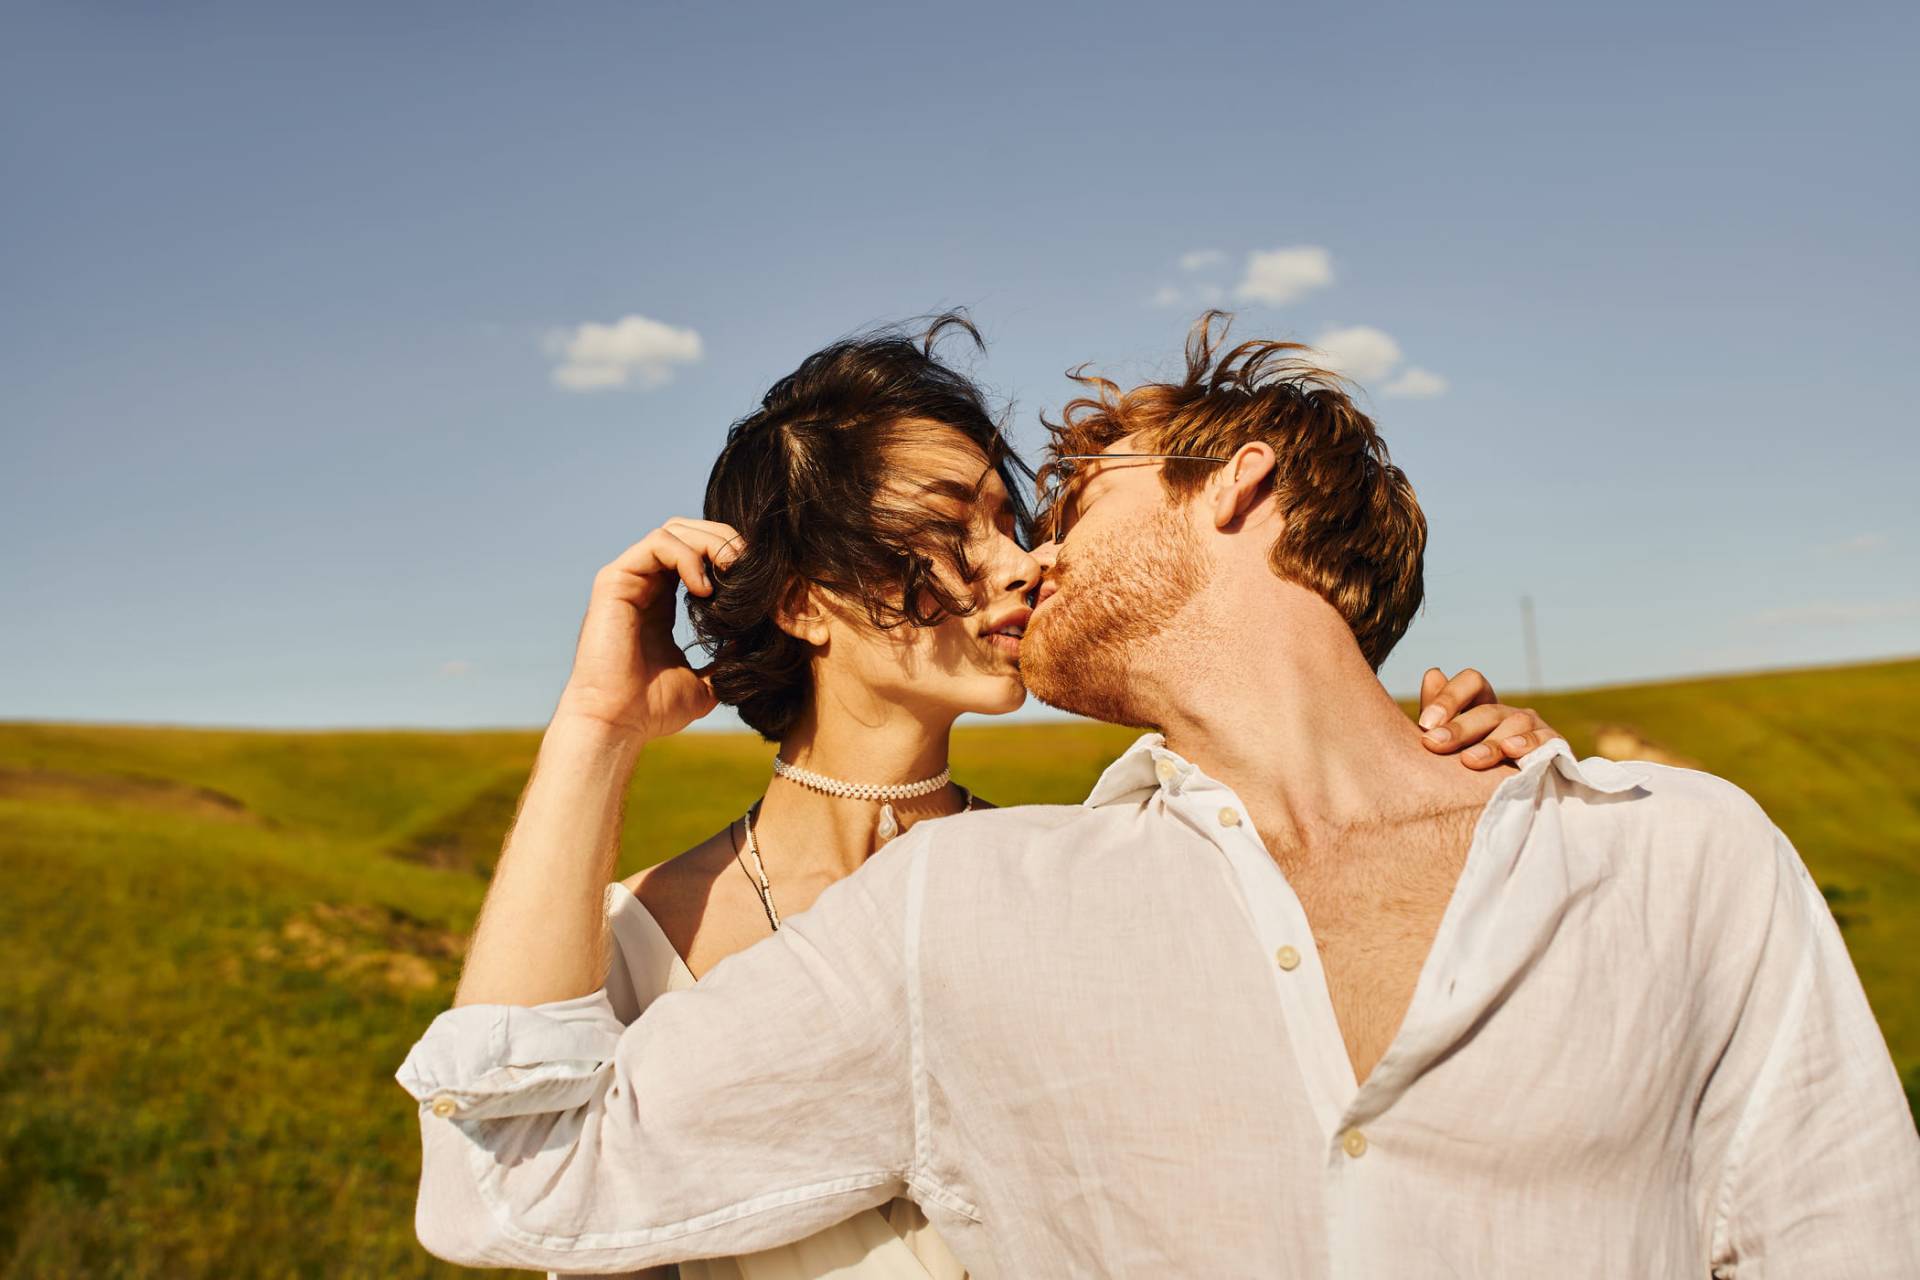 Küssen ist wichtig für den Erhalt der emotionalen Nähe in einer Partnerschaft